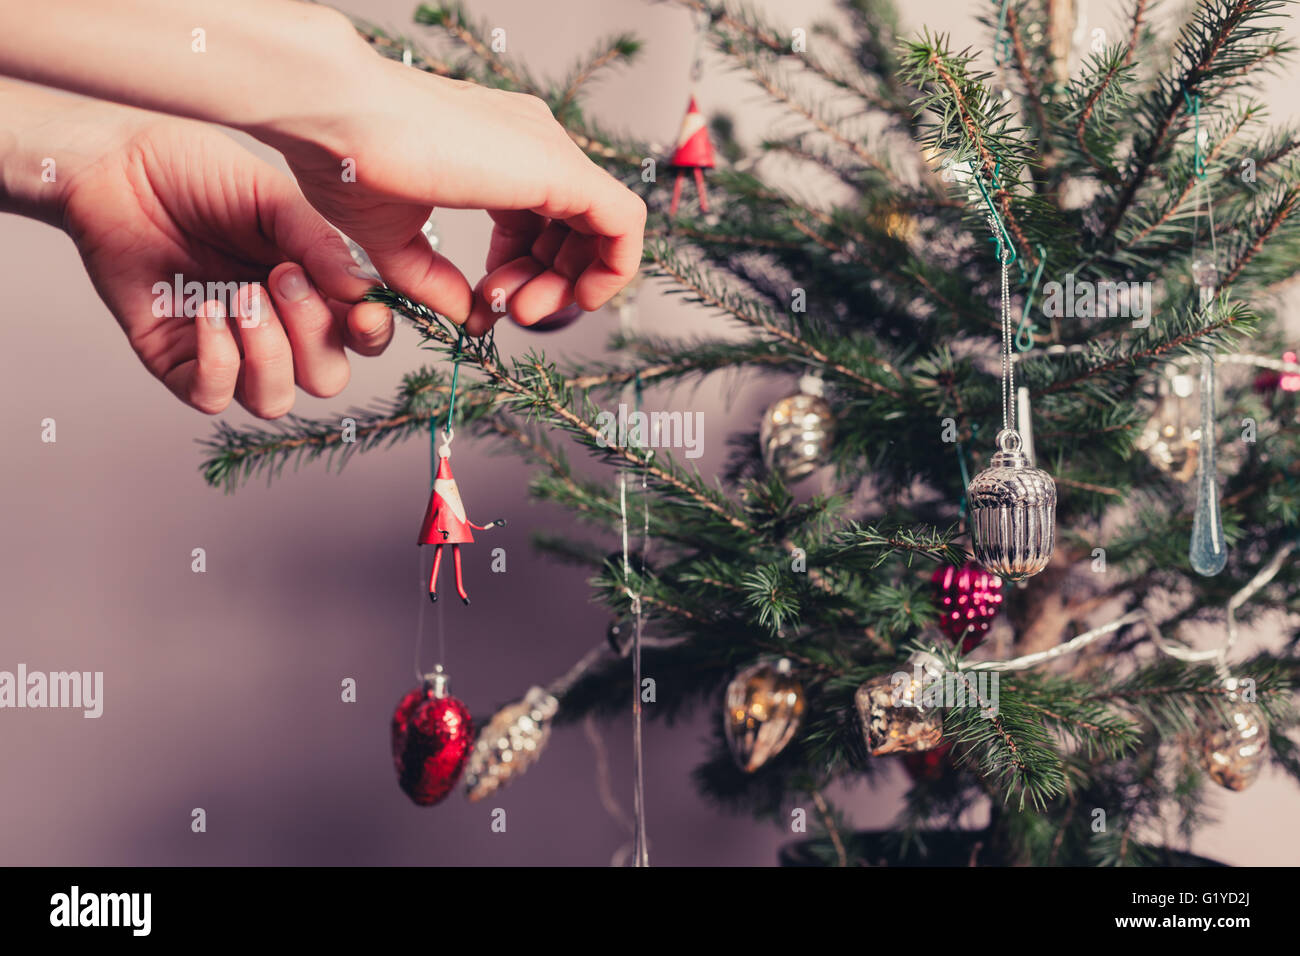 Hände, die einen Weihnachtsbaum mit allerlei bunten Sachen zu verzieren Stockfoto